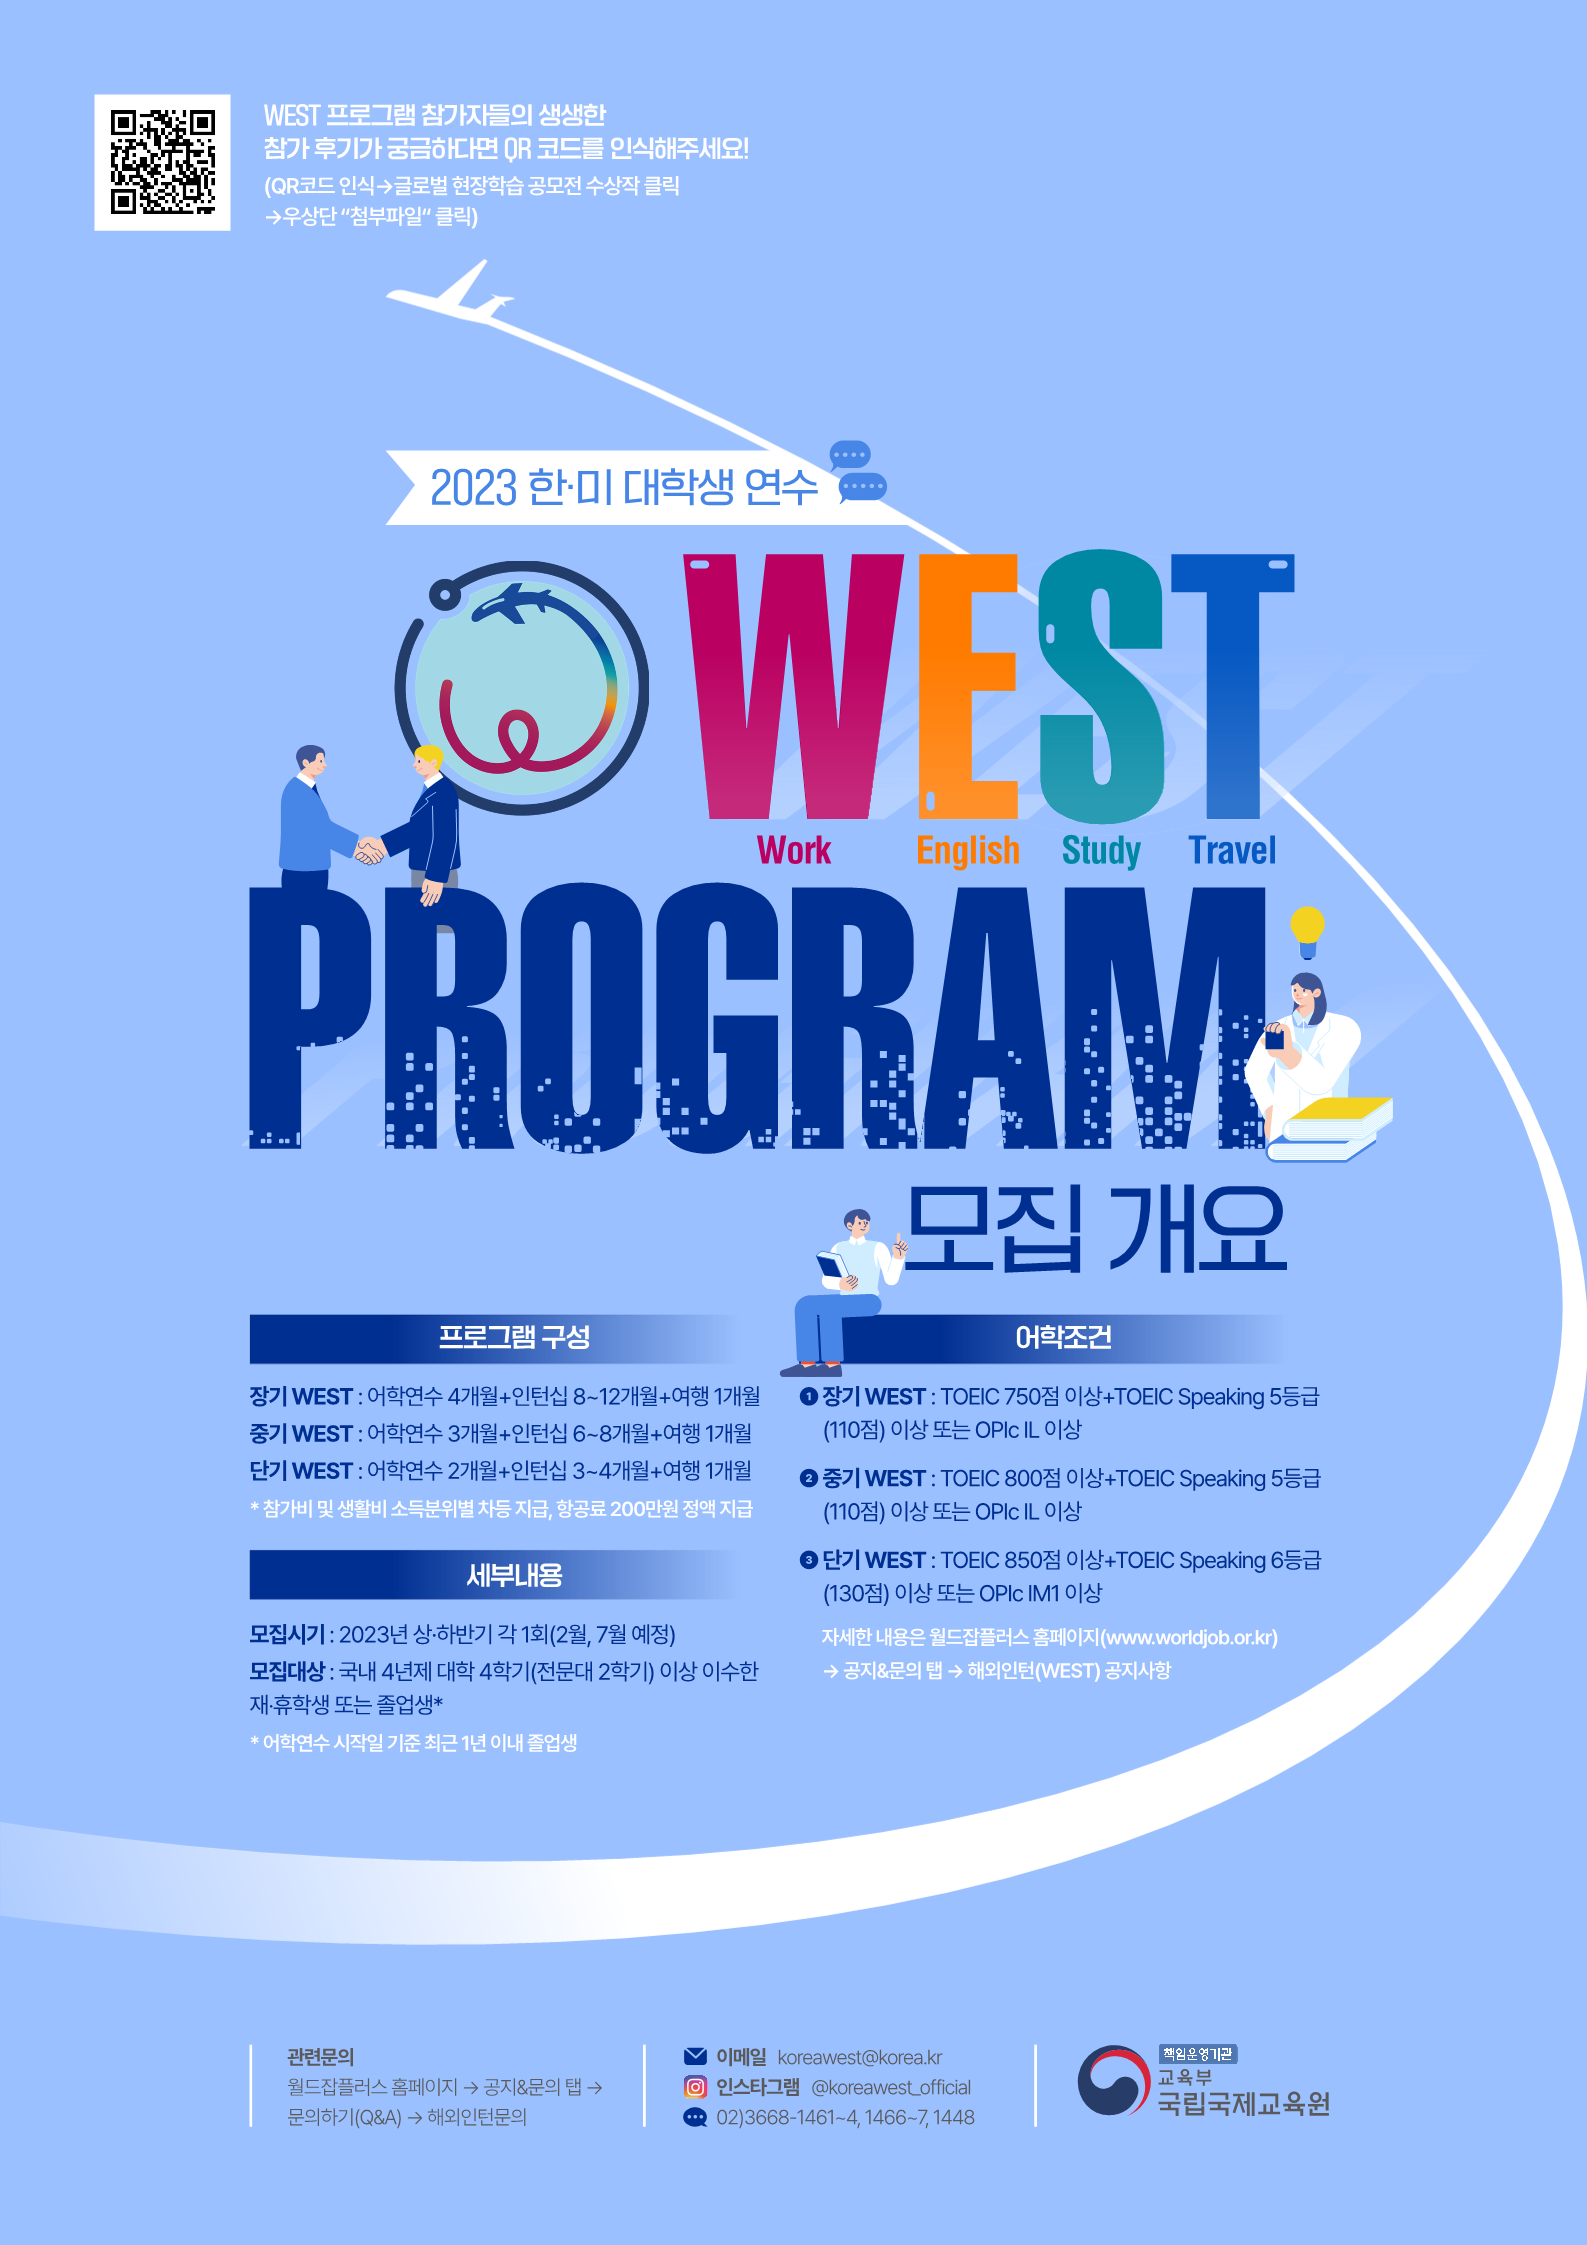 2023년 한미대학생연수(WEST) 프로그램 참가자 모집 개요_1.png